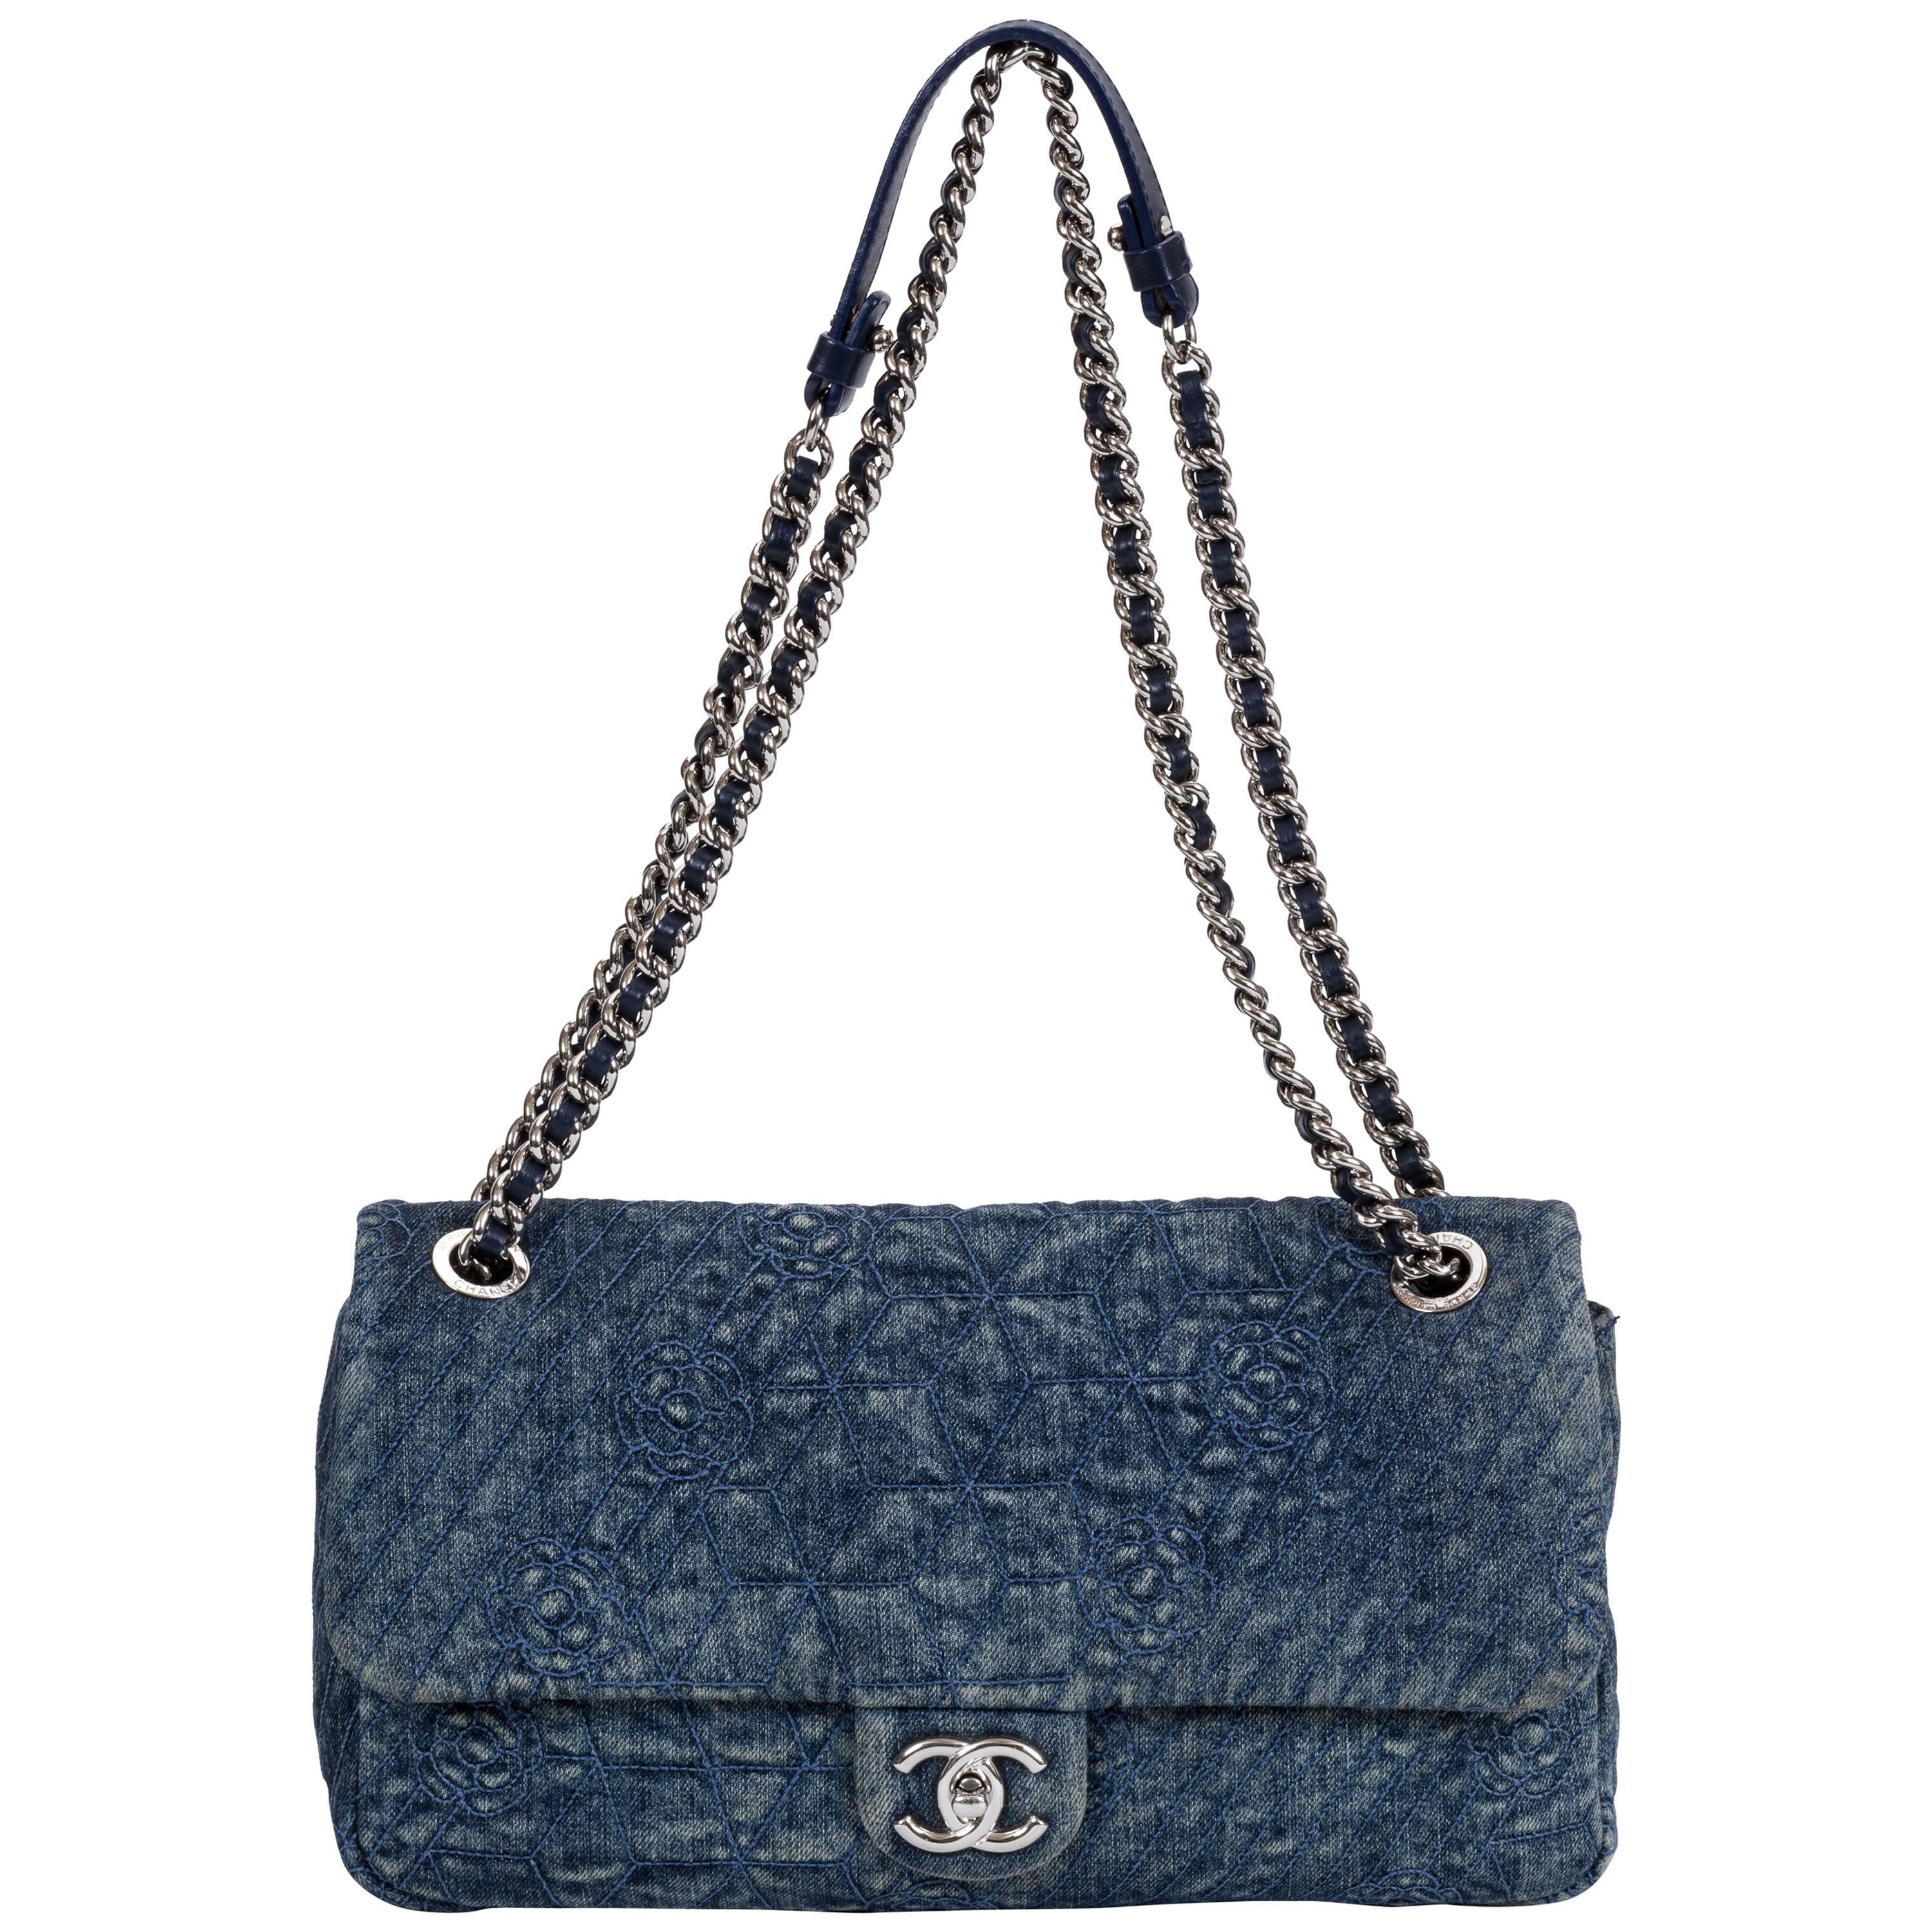 Chanel Camellia Denim Bag - For Sale on 1stDibs